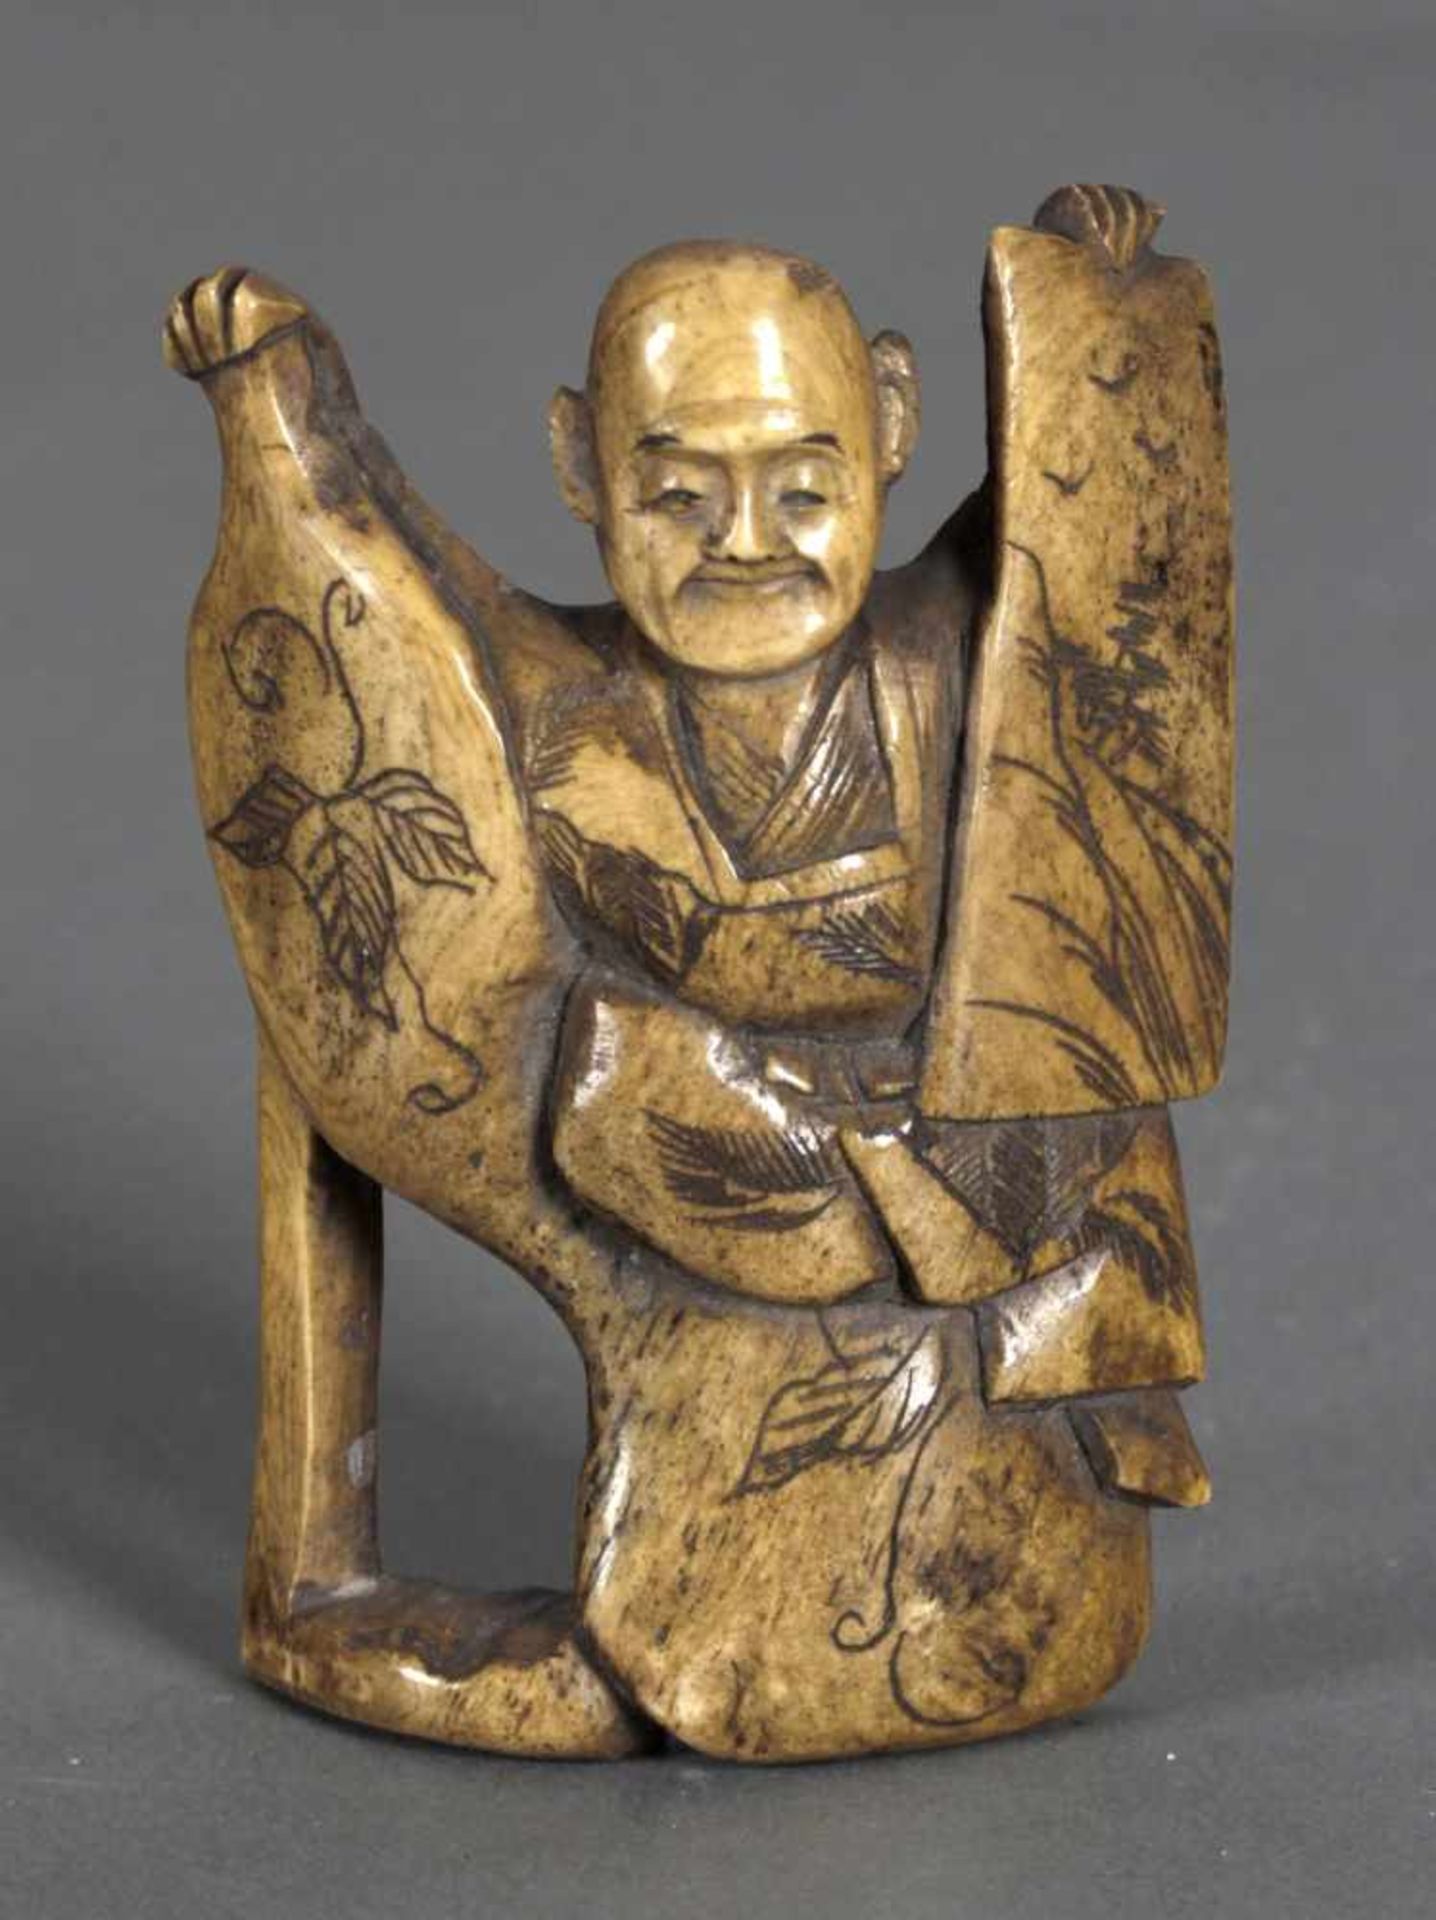 Netsuke eines sitzenden Mannes, 19. Jh.der zwei künstlerisch gestaltete Objekte (